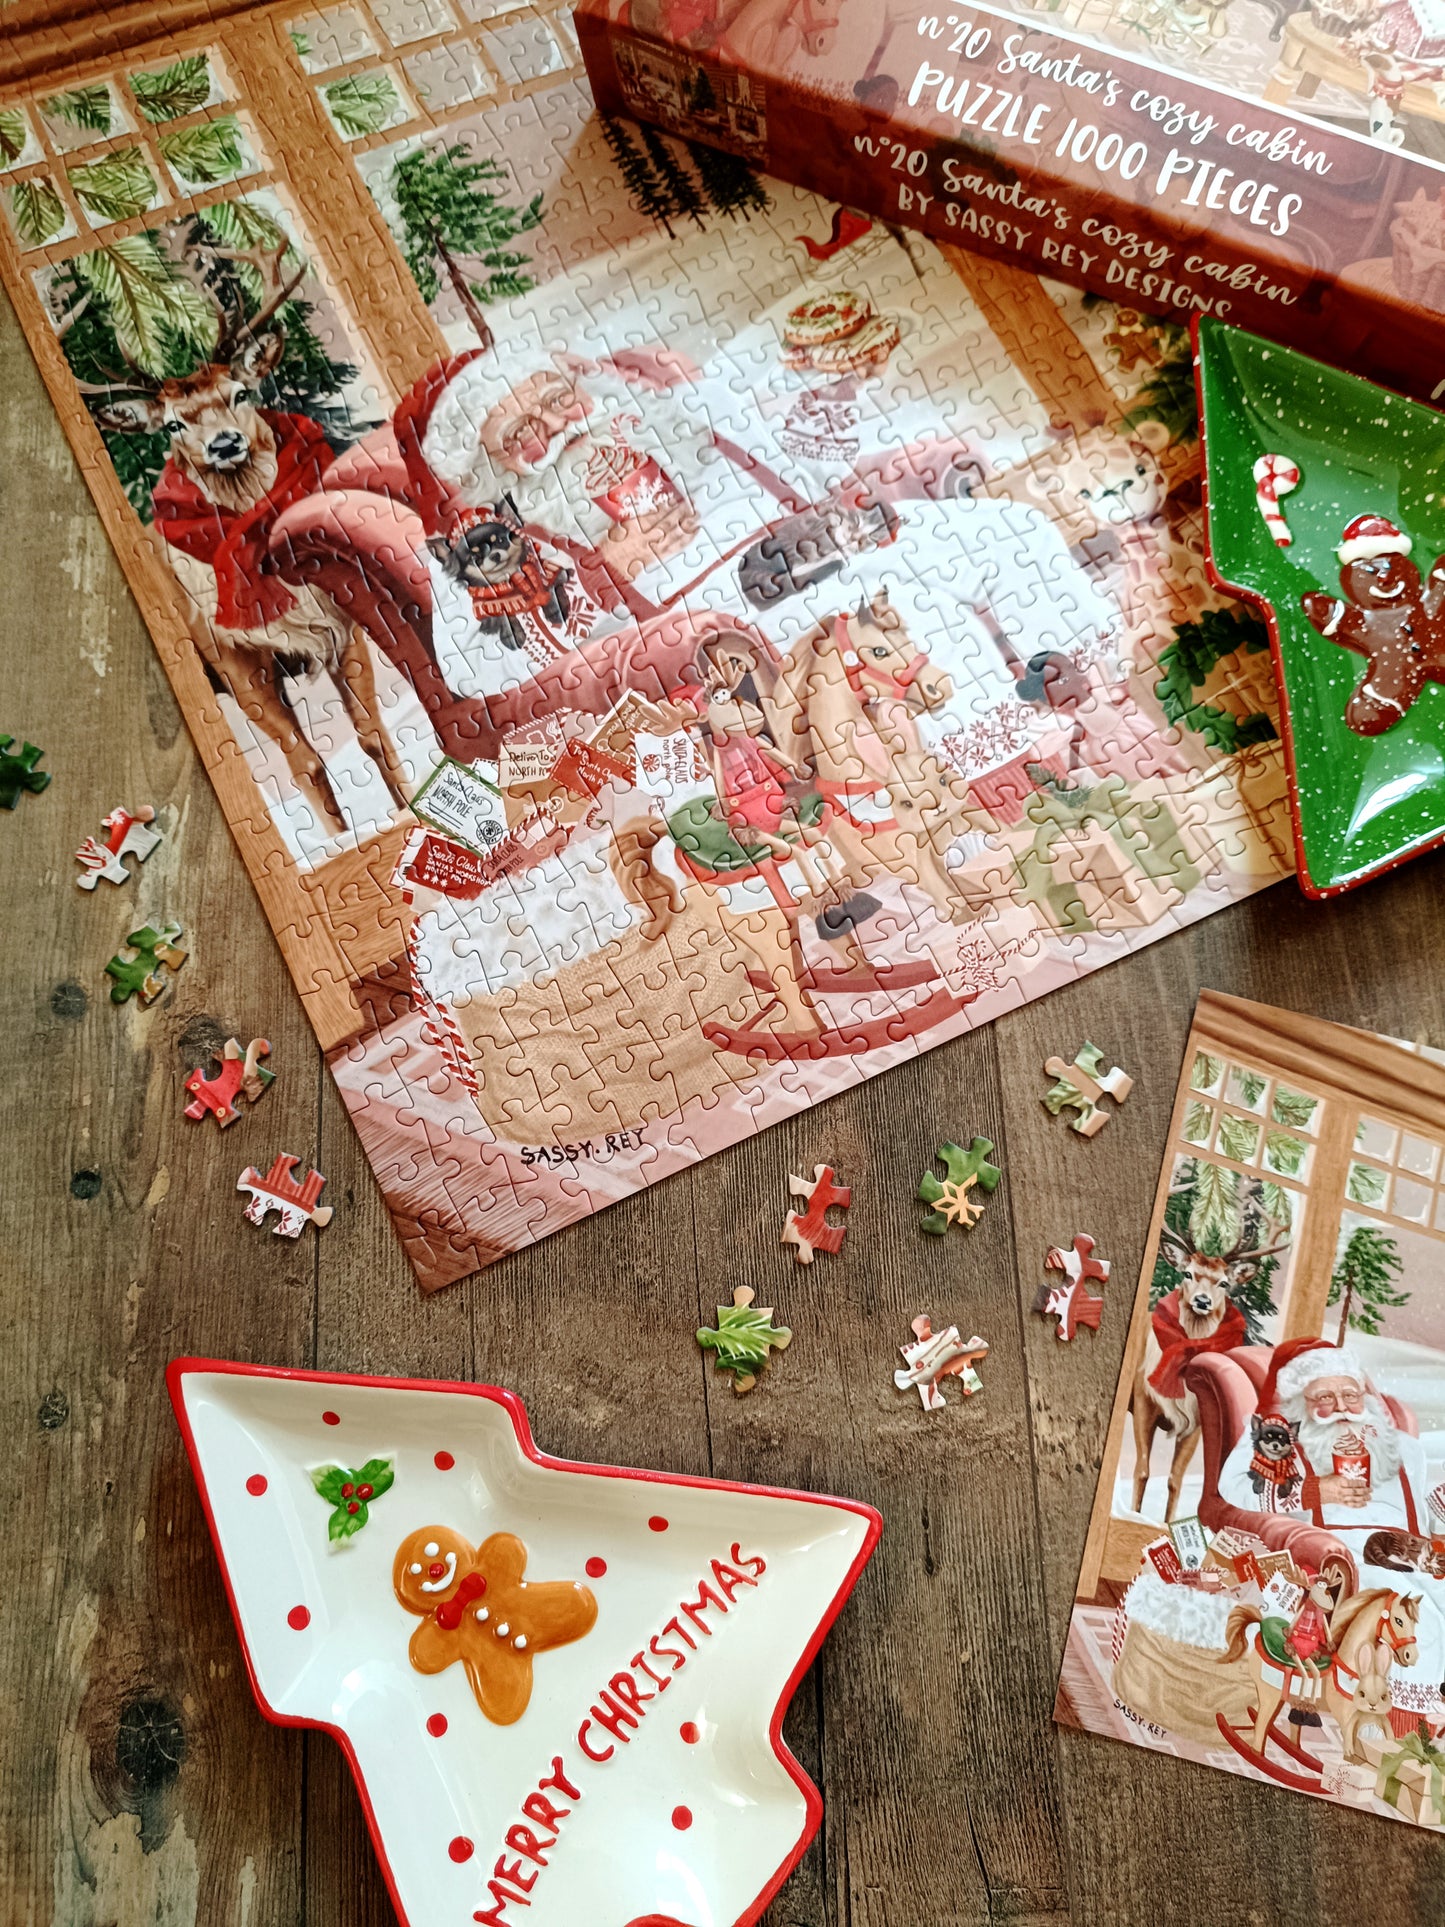 Puzzle n°20 "Santa's cozy cabin" 1000 pieces by Sarah Reyes